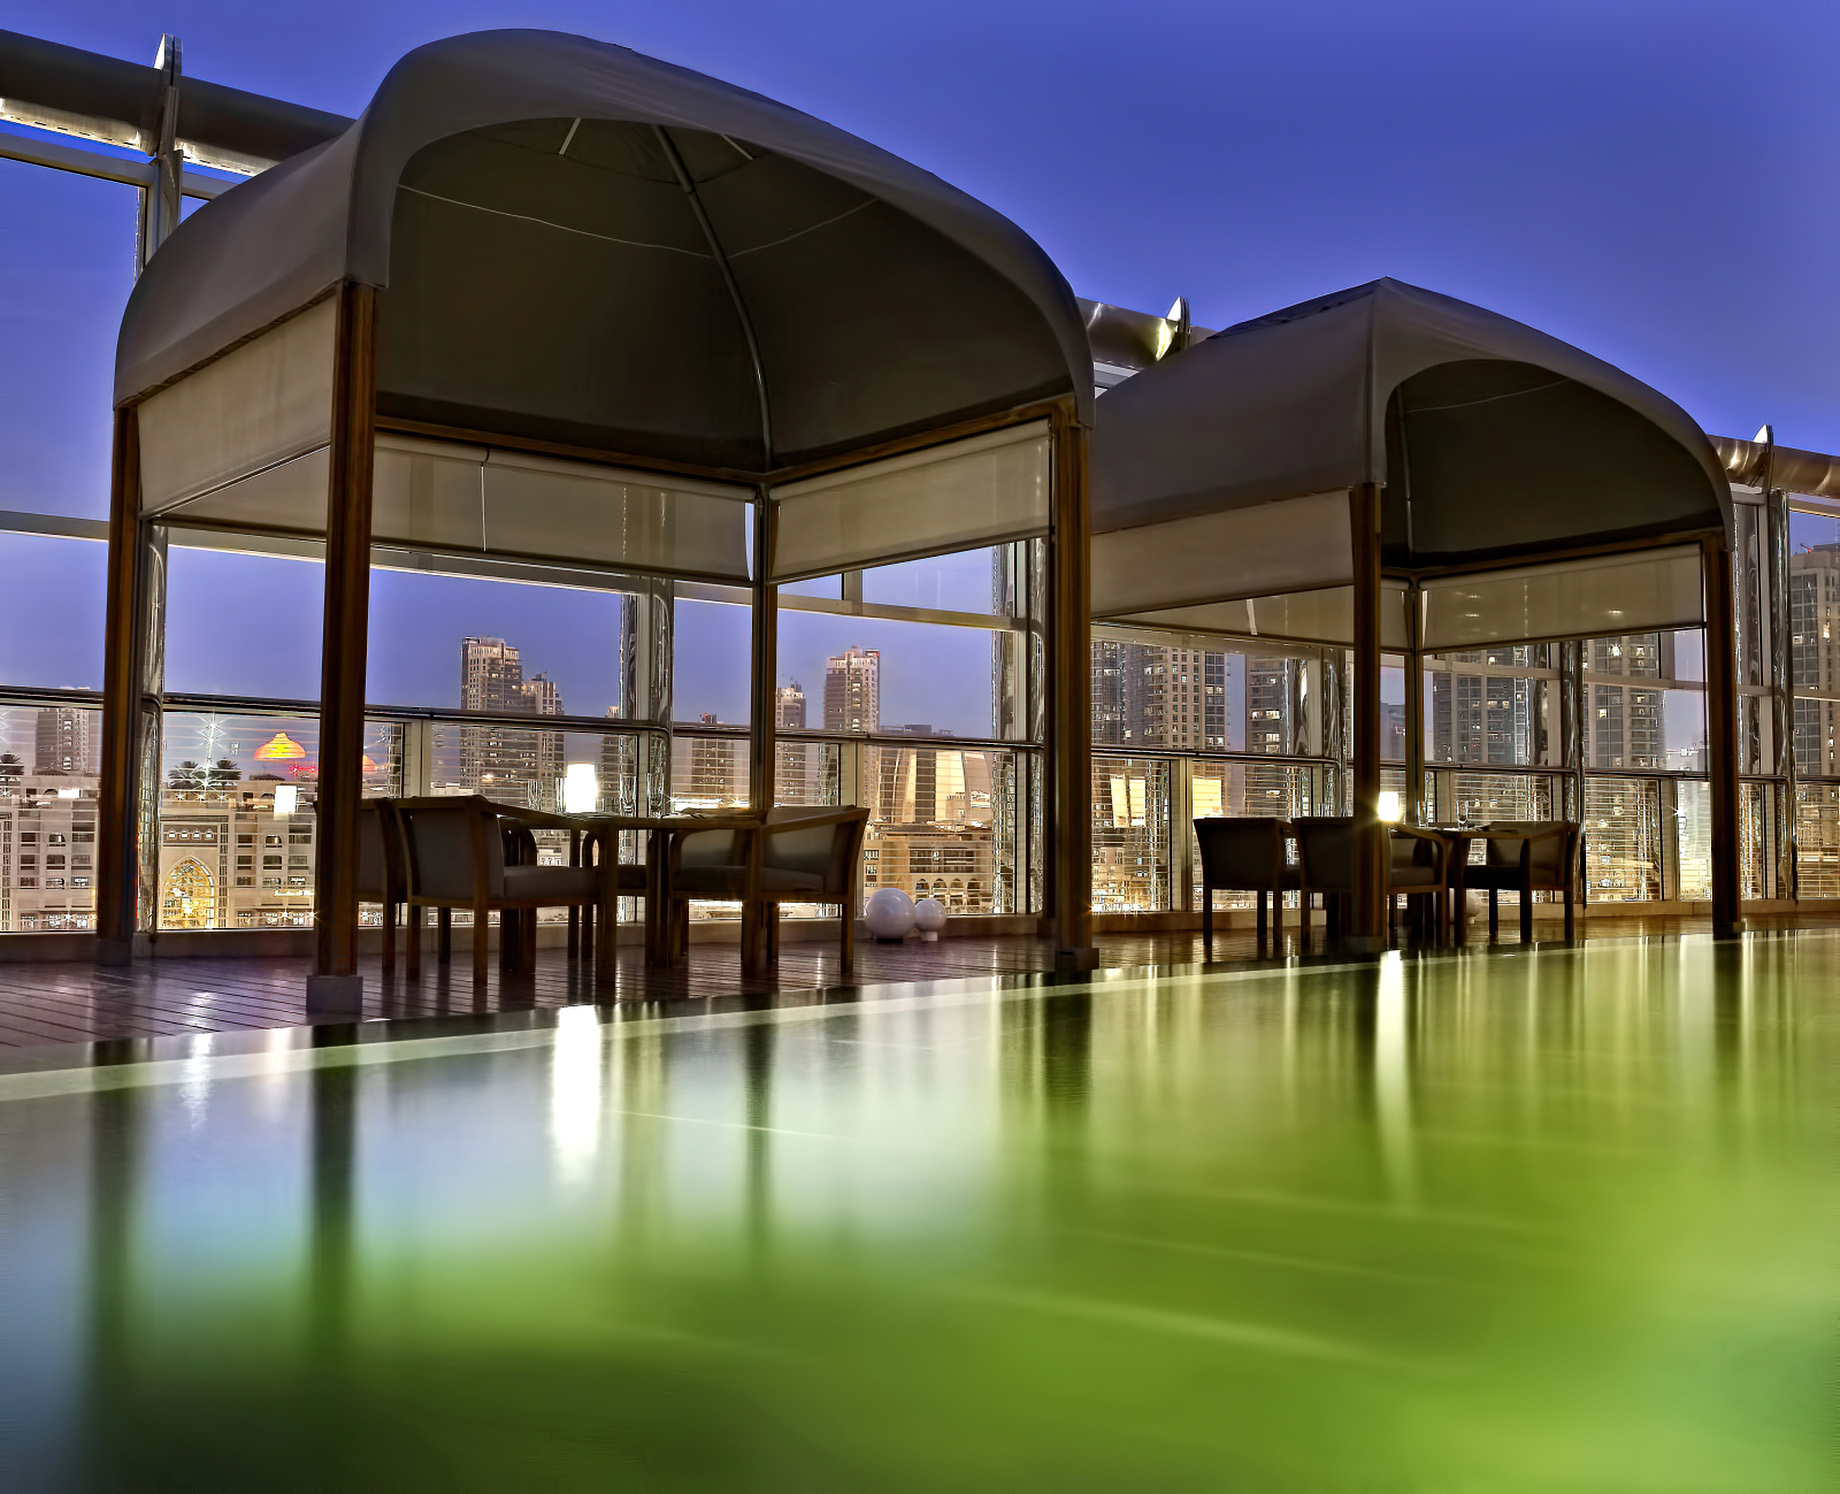 Armani Hotel Dubai – Burj Khalifa, Dubai, UAE – Armani Amal Outdoor Dining Experience